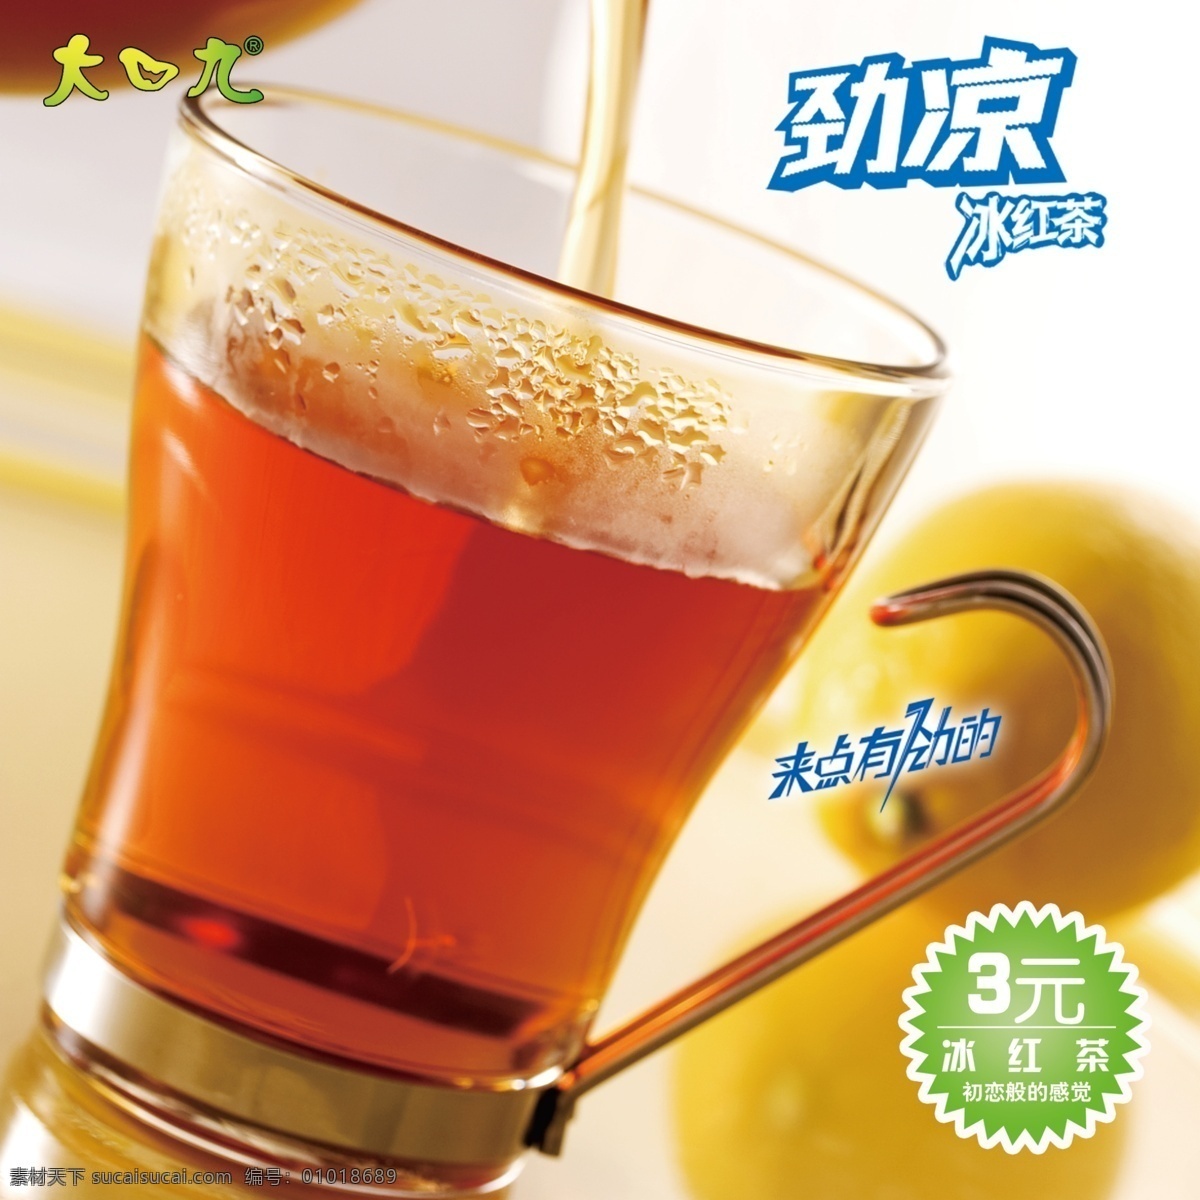 冰红茶饮品 冰红茶广告 冰红茶 饮品广告 广告设计模板 源文件